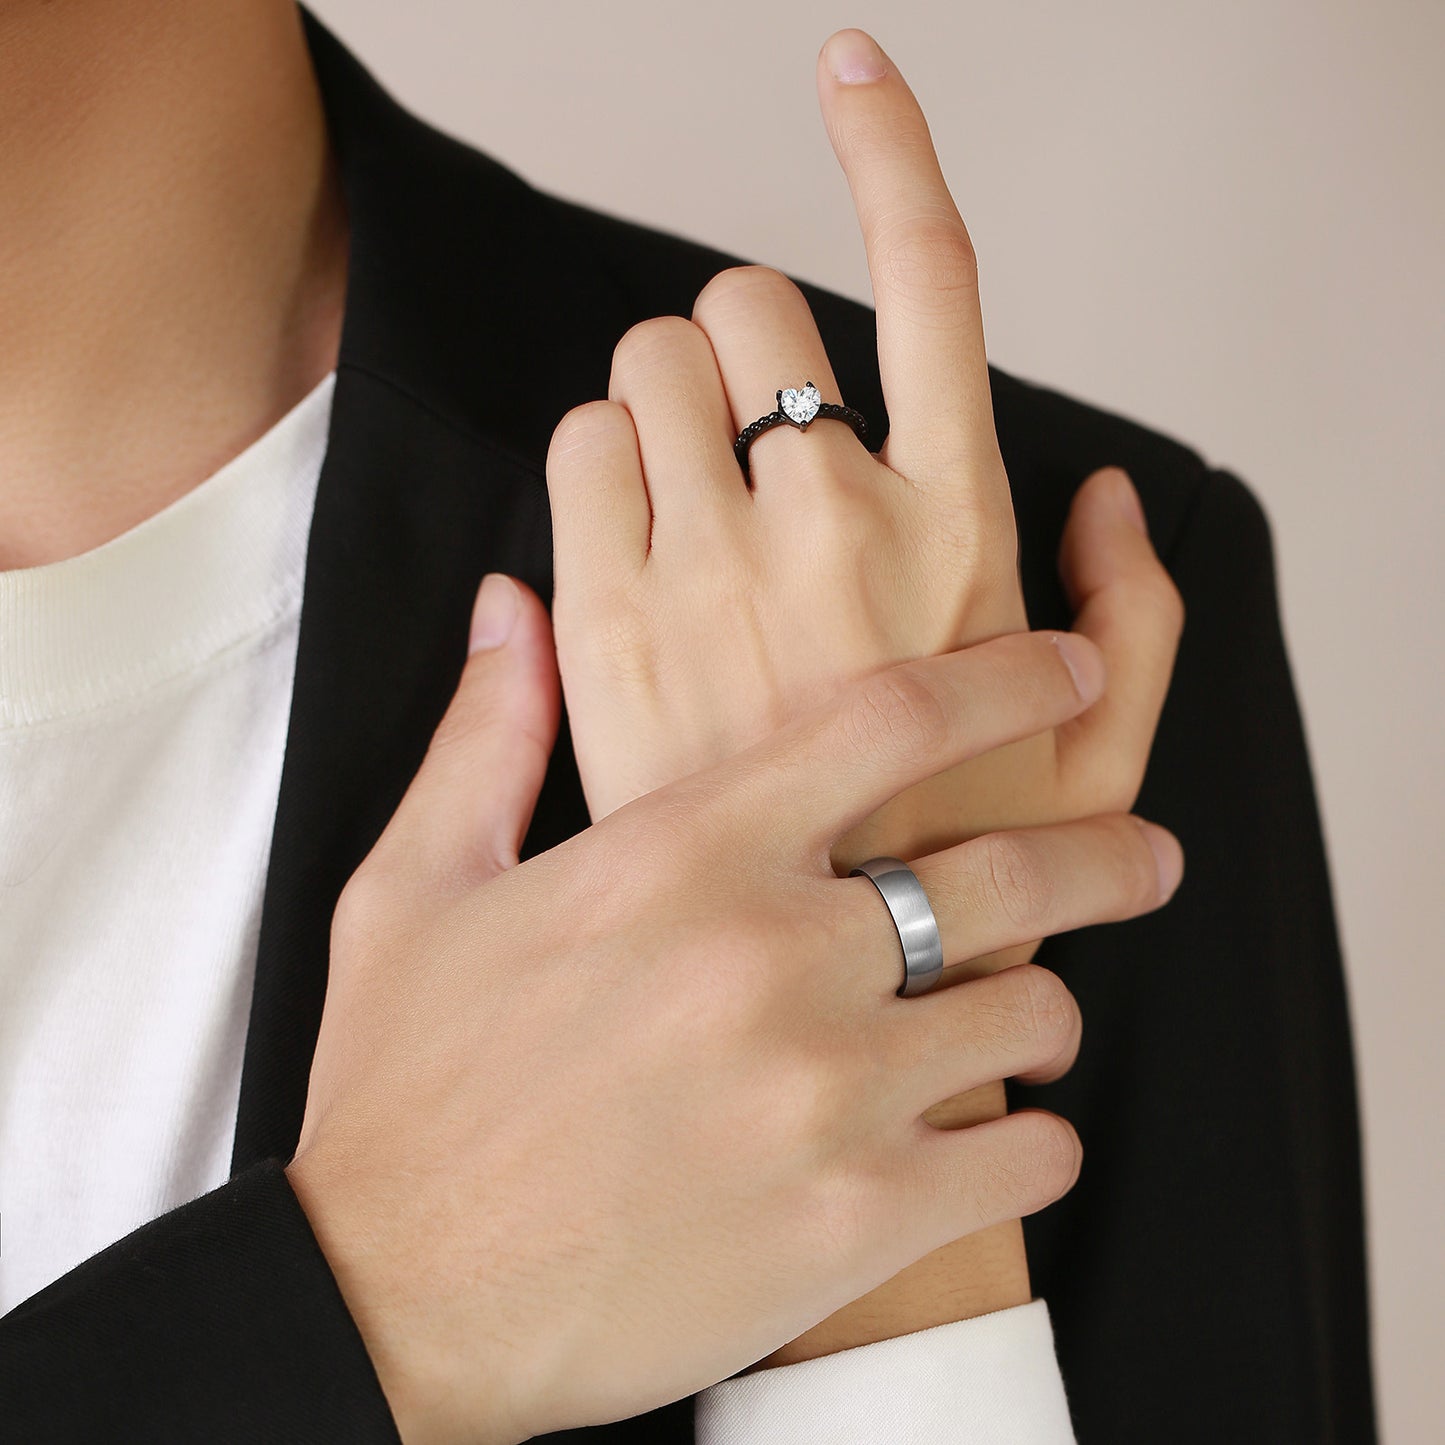 Custom Engravable Wedding Rings for Men and Women